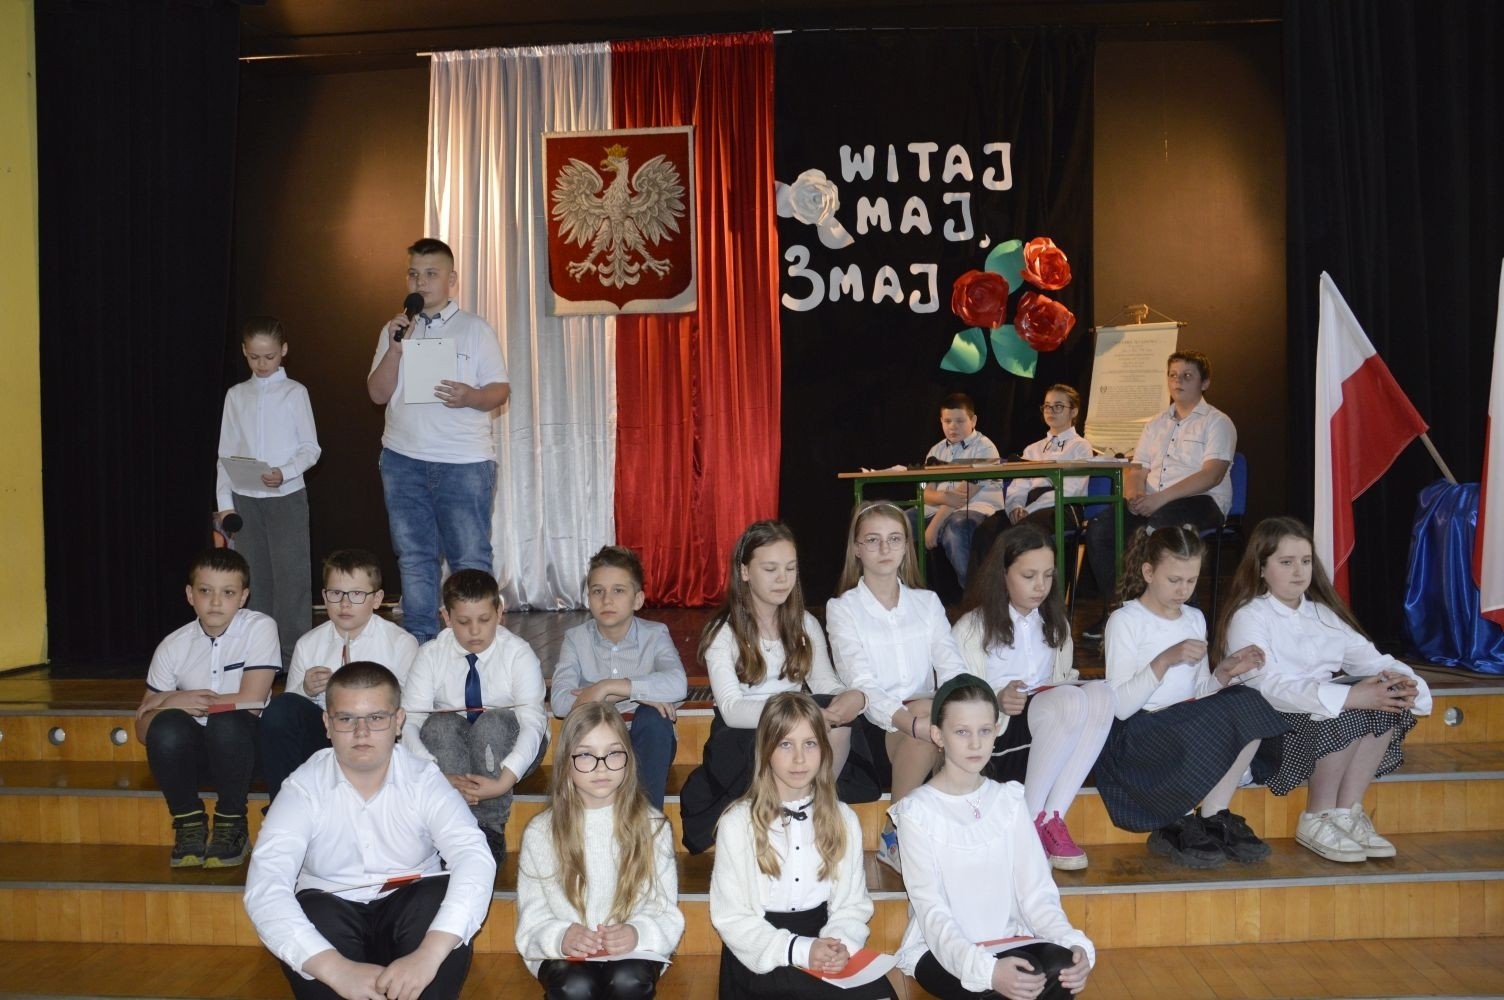 28 kwietnia odbyła się uroczysta akademia z okazji 232 rocznicy uchwalenia Konstytucji 3 Maja, pierwszej w Europie i drugiej na świecie ustawy, która regulowała system prawny naszego państwa, wprowadzając ustrój monarchii konstytucyjnej. Choć obowiązywała zaledwie przez 14 miesięcy, była próbą ratowania suwerenności, zagrożonej wówczas agresją sąsiadów, Polski.
   W apelu wzięli udział uczniowie z klas IV-VIII , którzy tego dnia przyszli do szkoły w galowym stroju. Uroczystość rozpoczęto odśpiewaniem hymnu narodowego. Następnie młodzi aktorzy z klas Va i Vb wcielili się w role, by przybliżyć nam to, co stanowi nieodłączny element naszej tożsamości narodowej - czyny Wielkich Polaków i ich znaczenie dla przyszłości kraju. Mimo podniosłego nastroju, znalazło się także miejsce na odrobinę humoru.
   Spotkanie to było doskonałą lekcją historii, dla starszych uczniów powtórką najważniejszych wydarzeń z  przeszłości naszej Ojczyzny, dla młodszych wprowadzeniem w świat zawiłych losów minionych pokoleń Polaków. Całość przedstawienia uświetniły pieśni patriotyczne przygotowane przez p. I. Matukiewicz.